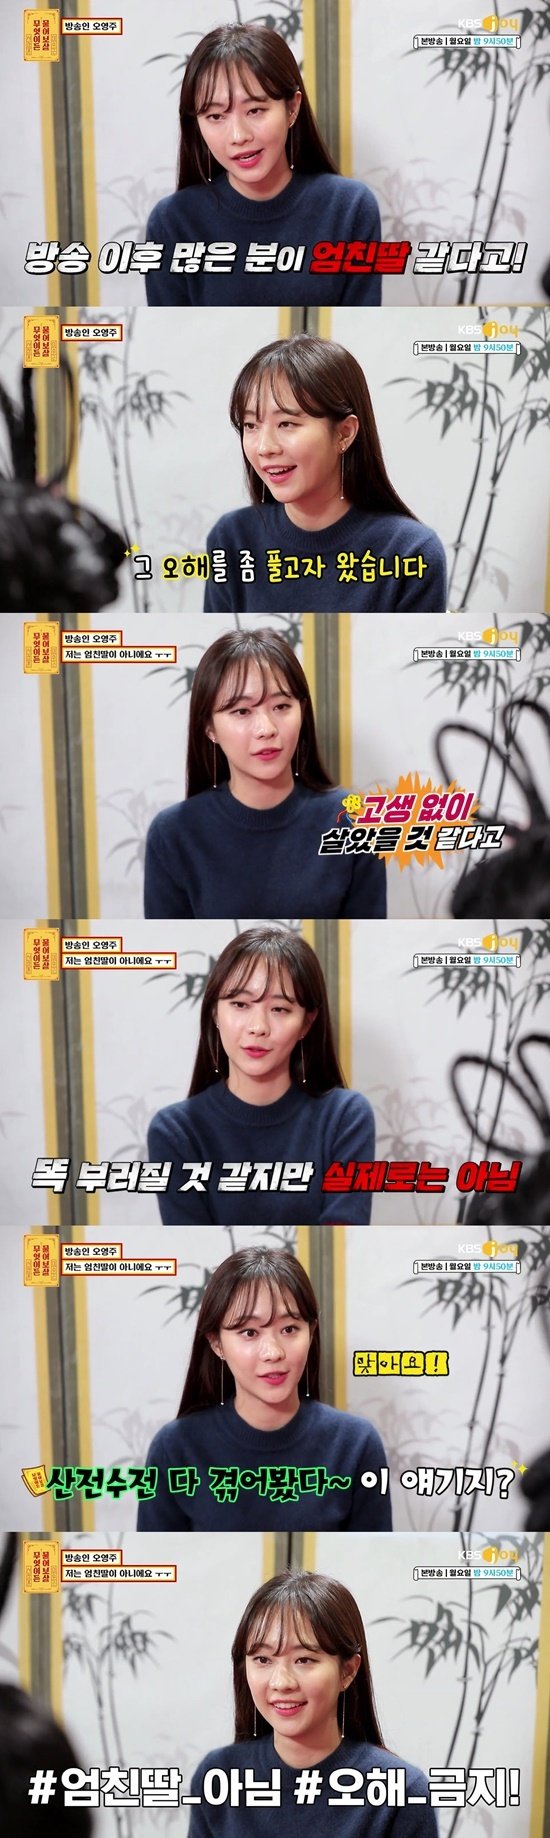 KBS Joy ‘무엇이든 물어보살’ 방송 화면 캡처